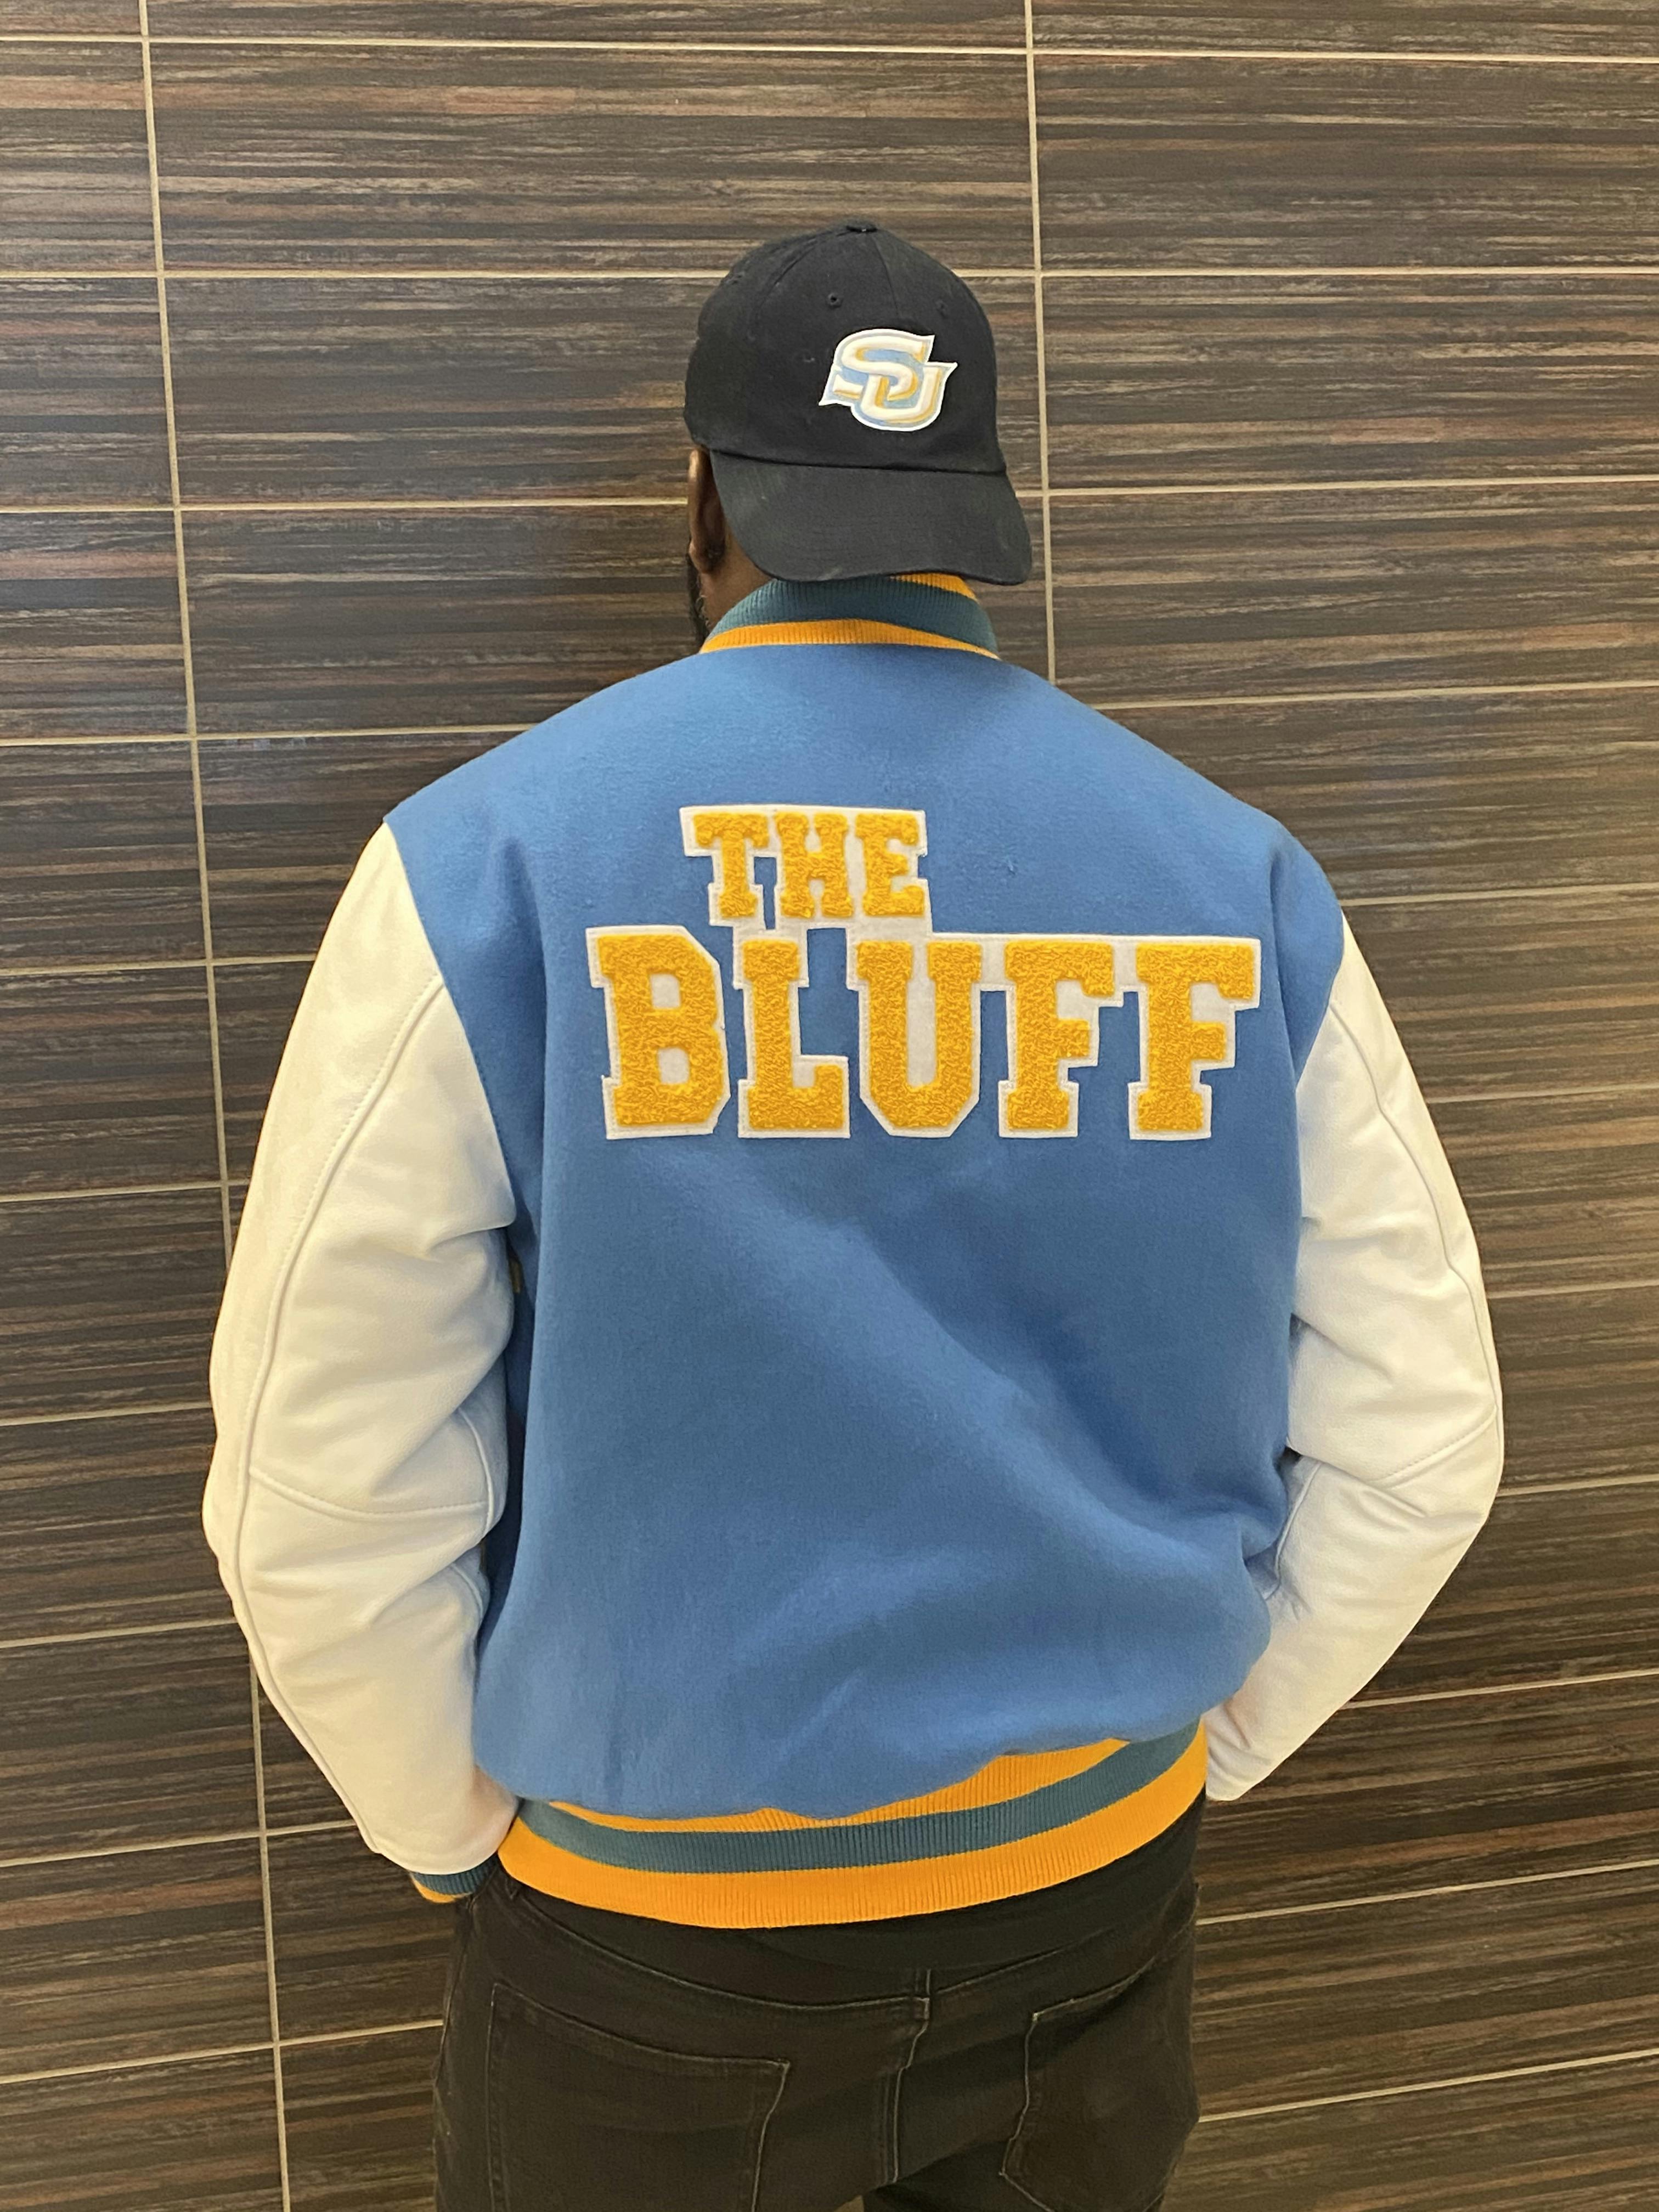 Southern University Blue Varsity Jacket